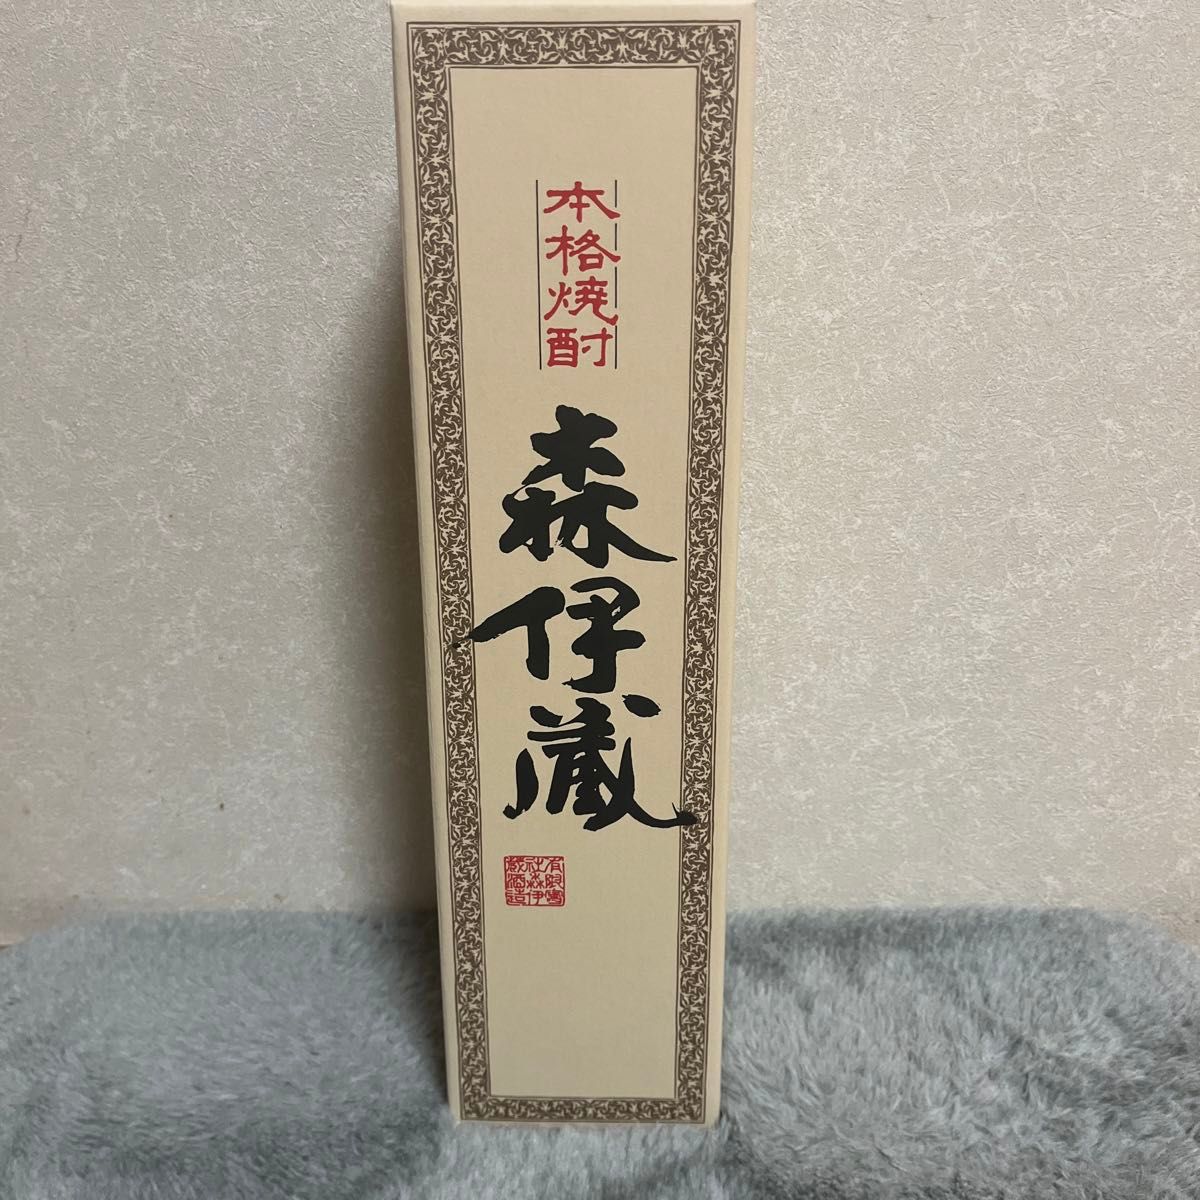 森伊蔵 1800ml (化粧箱付き) 森伊蔵酒造